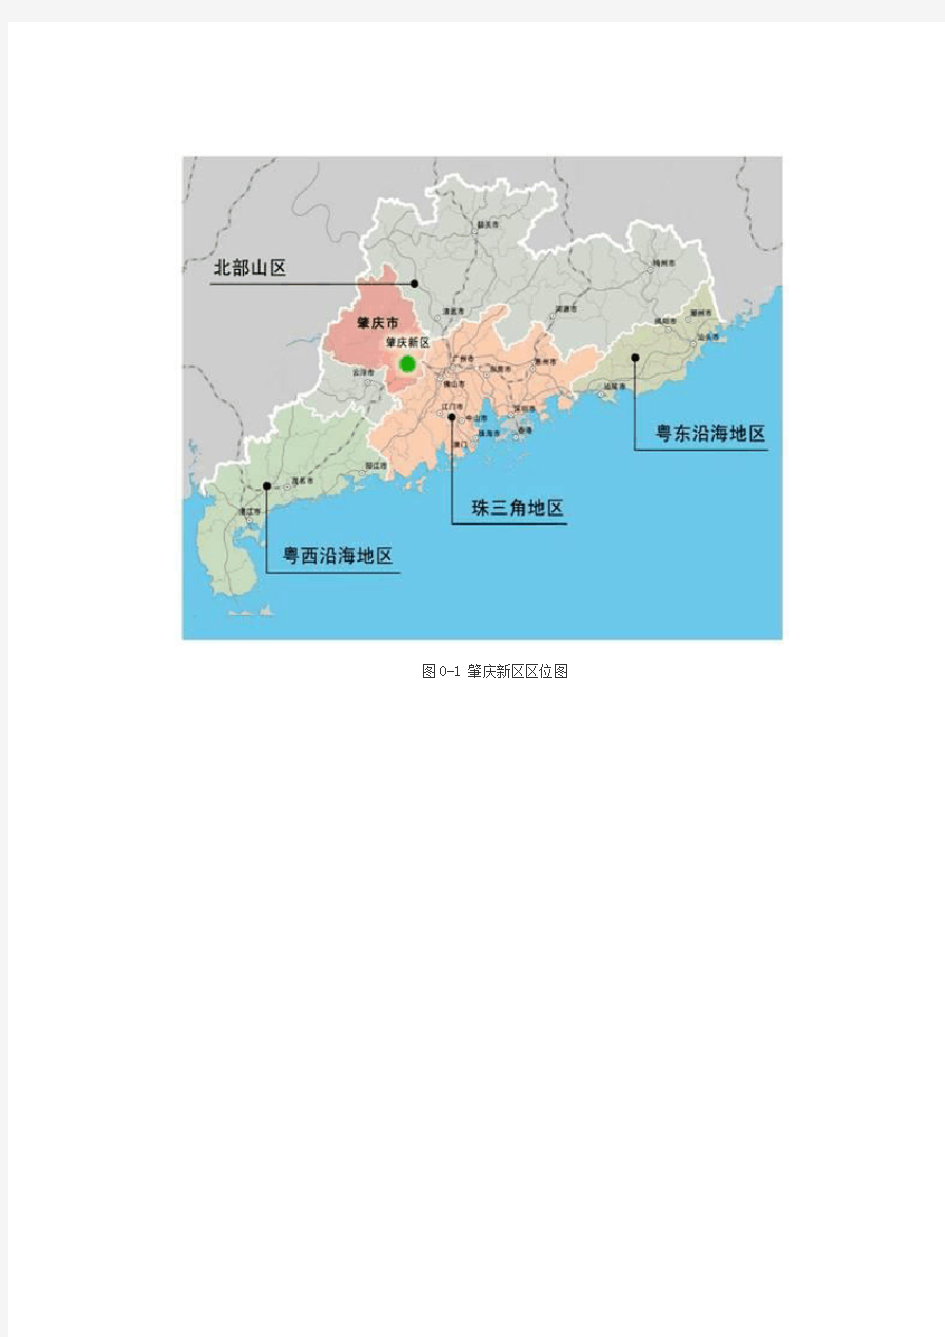 广东肇庆新区发展总体规划